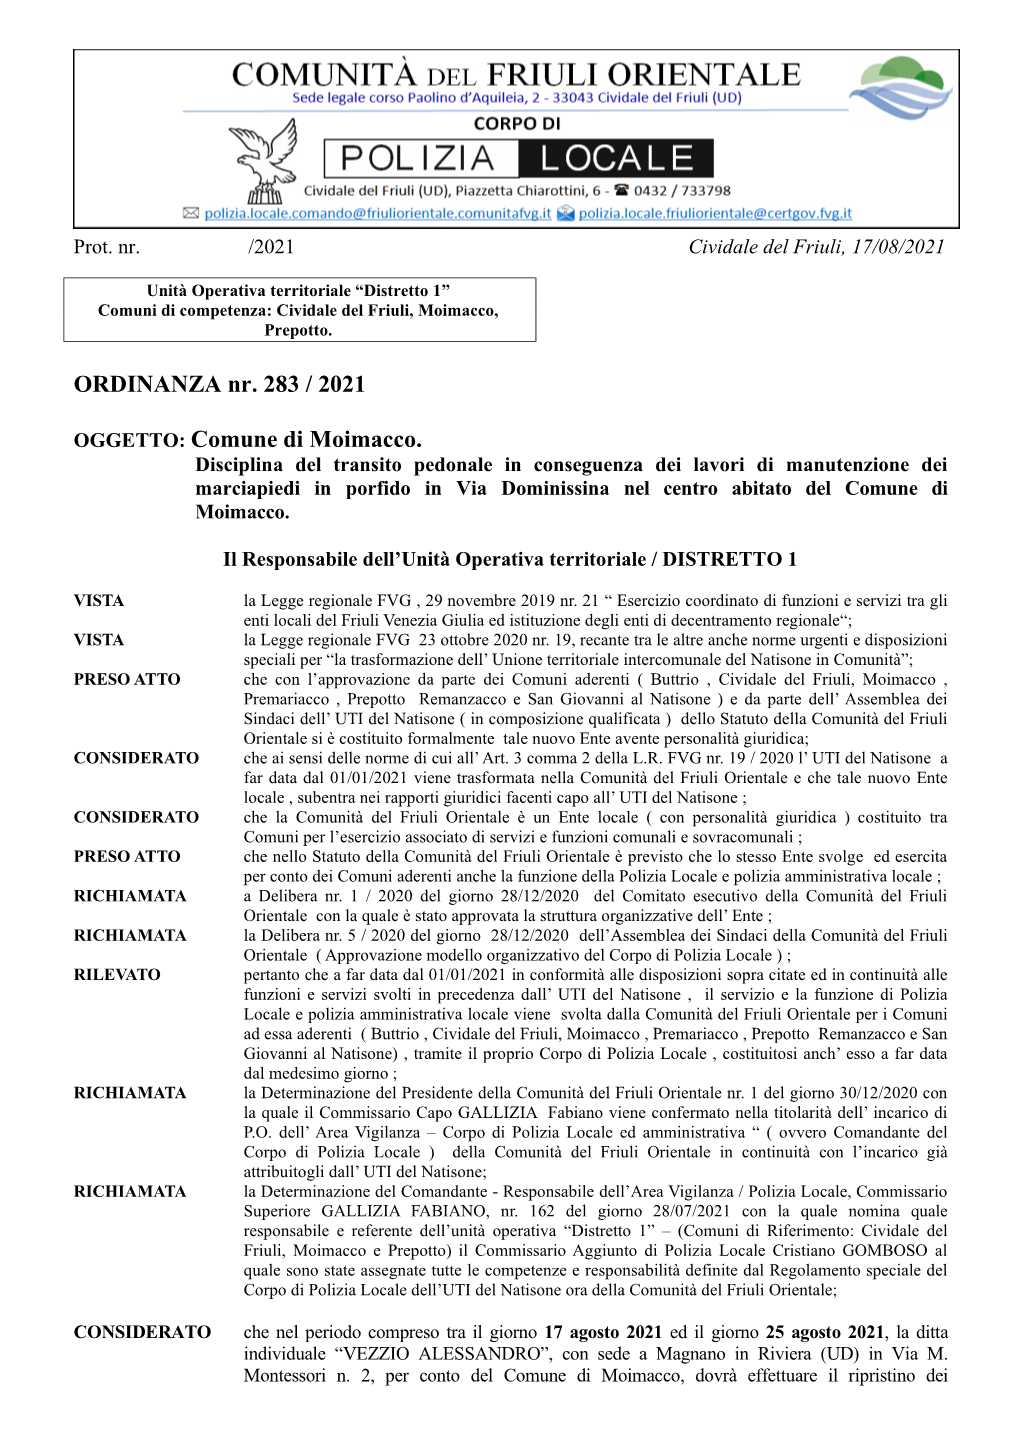 ORDINANZA Nr. 283 / 2021 OGGETTO: Comune Di Moimacco